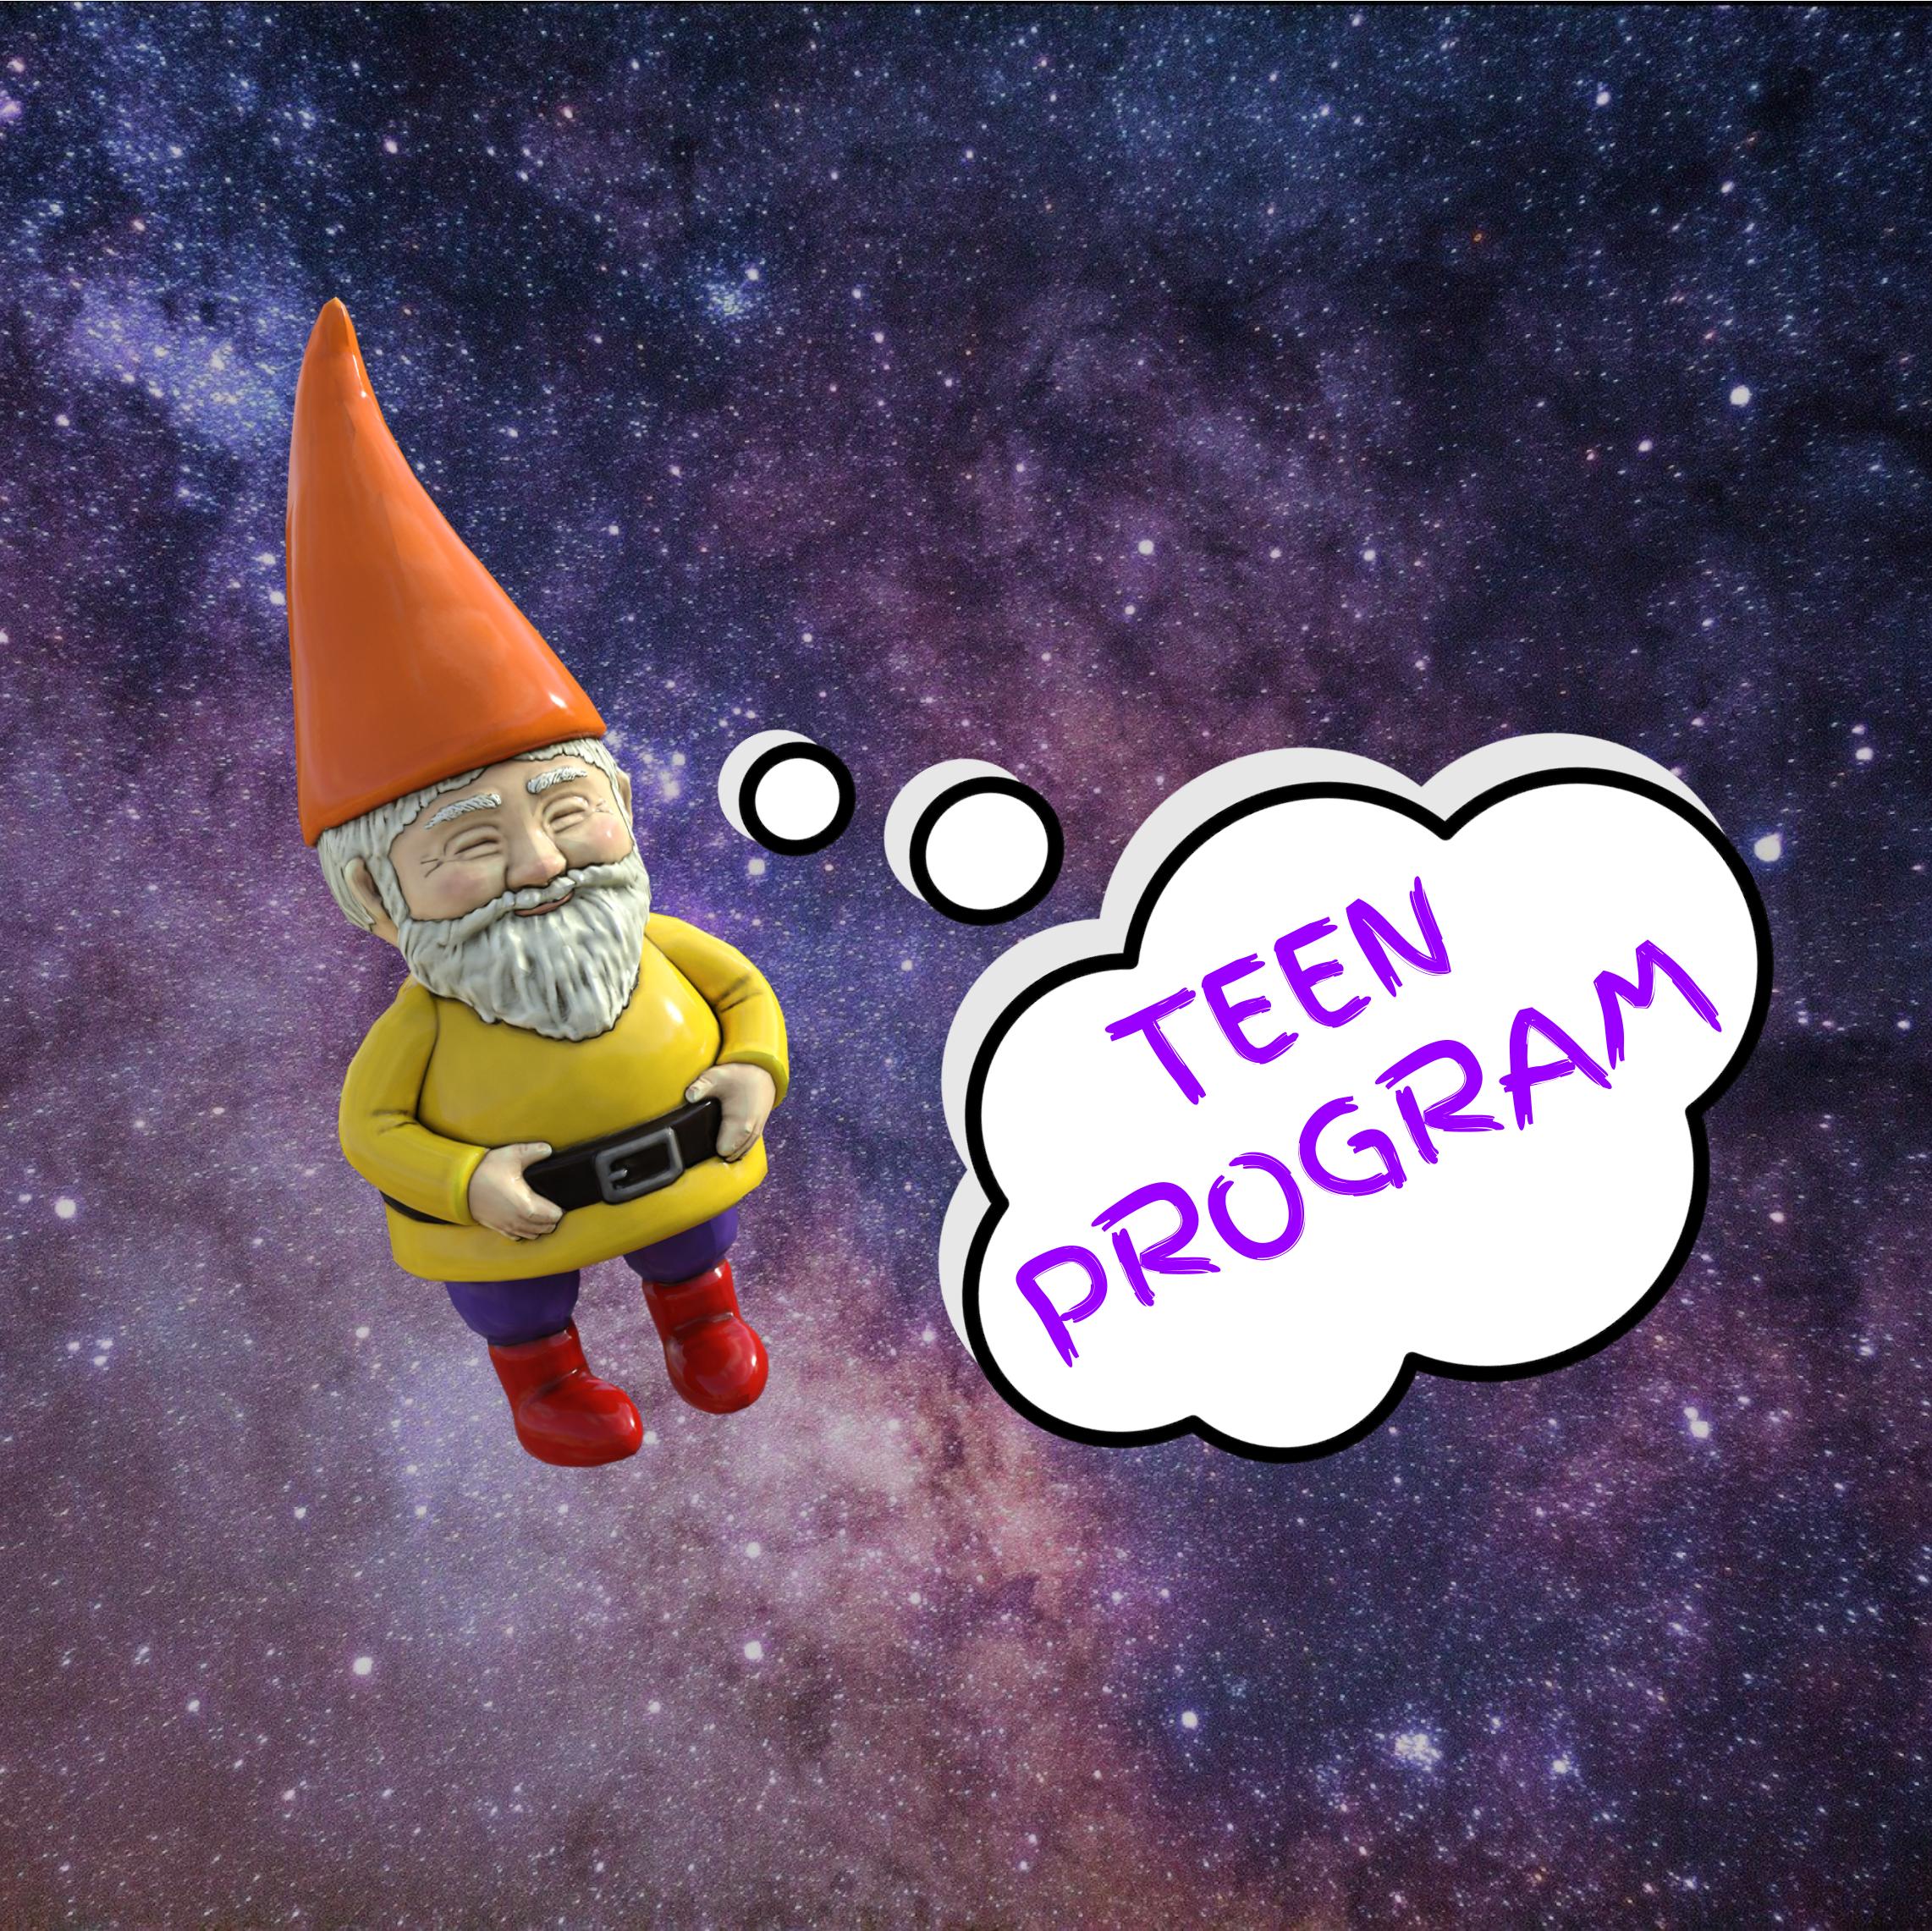 Teen Program